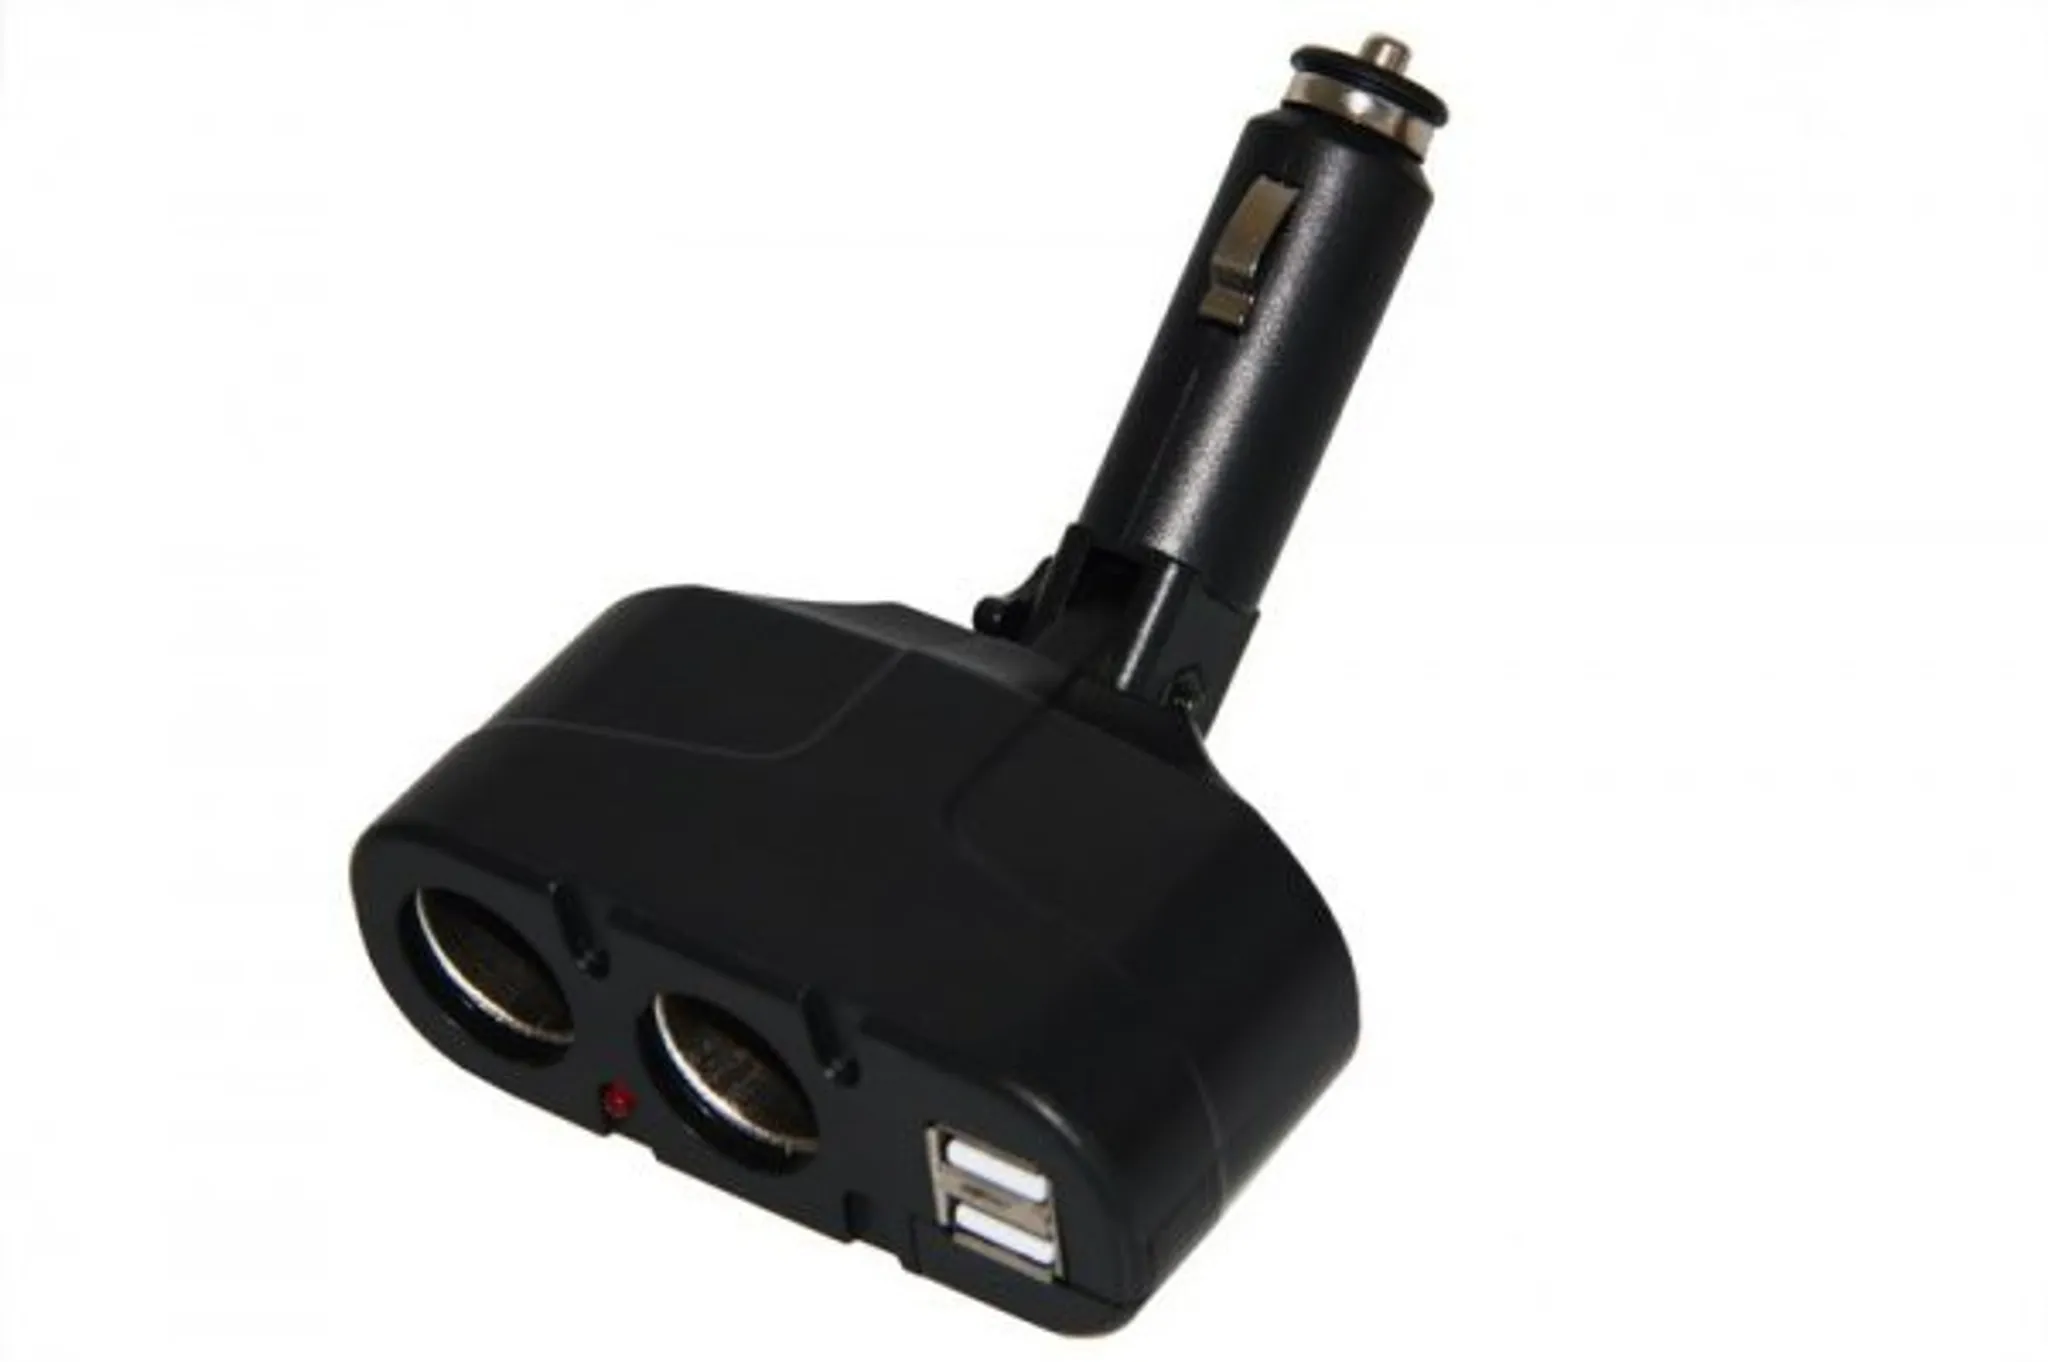 OTB KFZ-Adapter / Verteiler Zigarettenanzünder - Stecker auf 2x